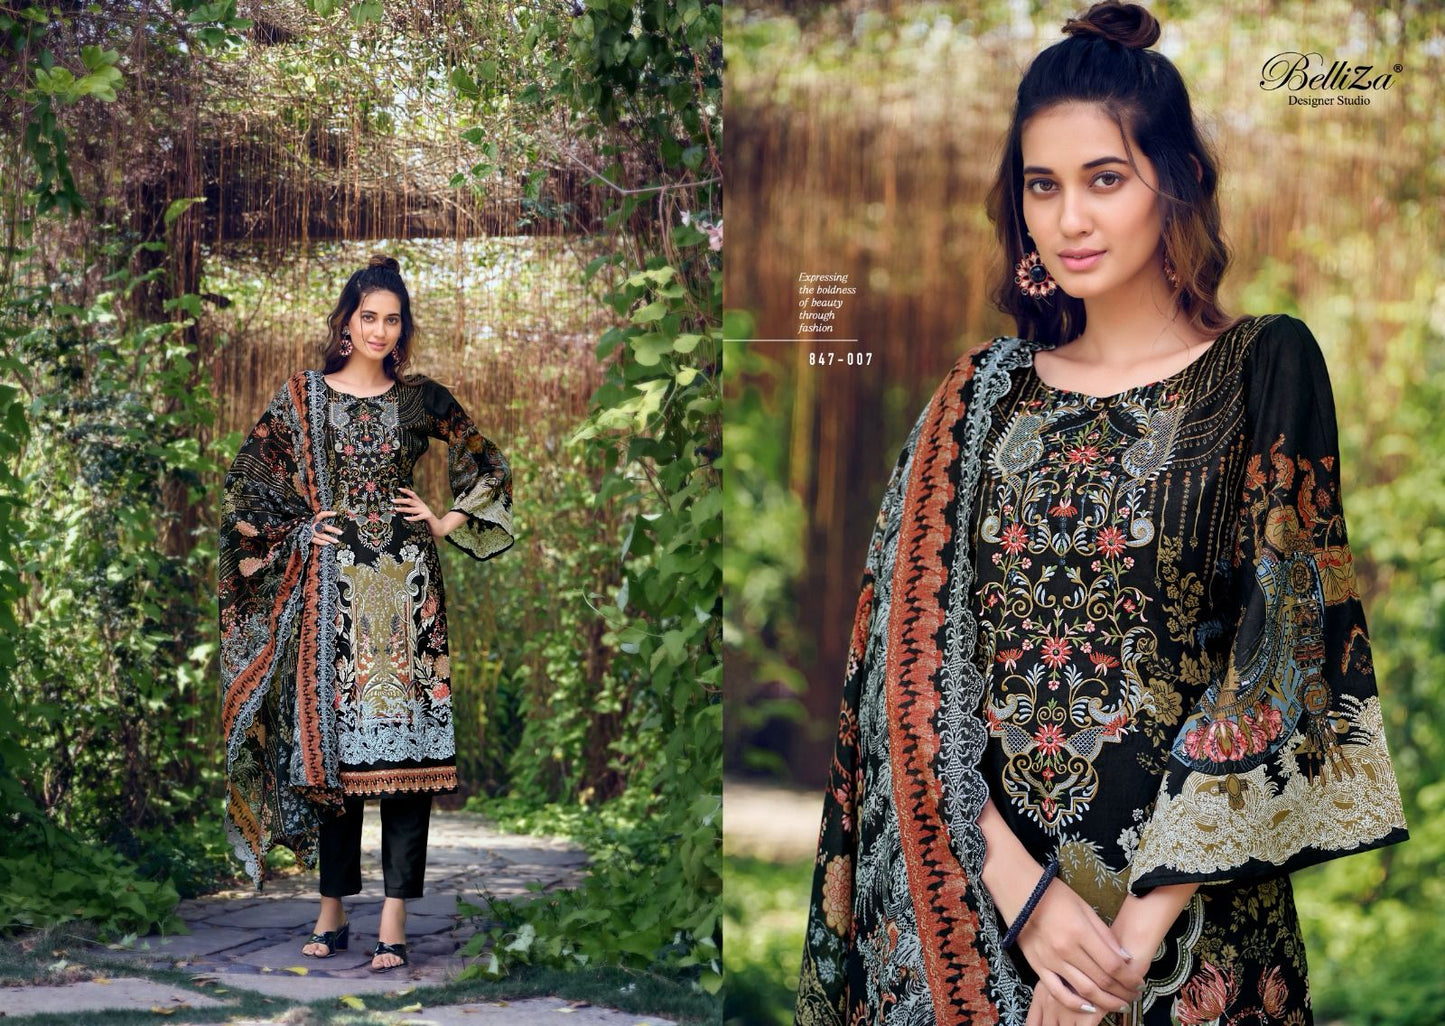 Guzarish Belliza Designer Studio Cotton Karachi Salwar Suits